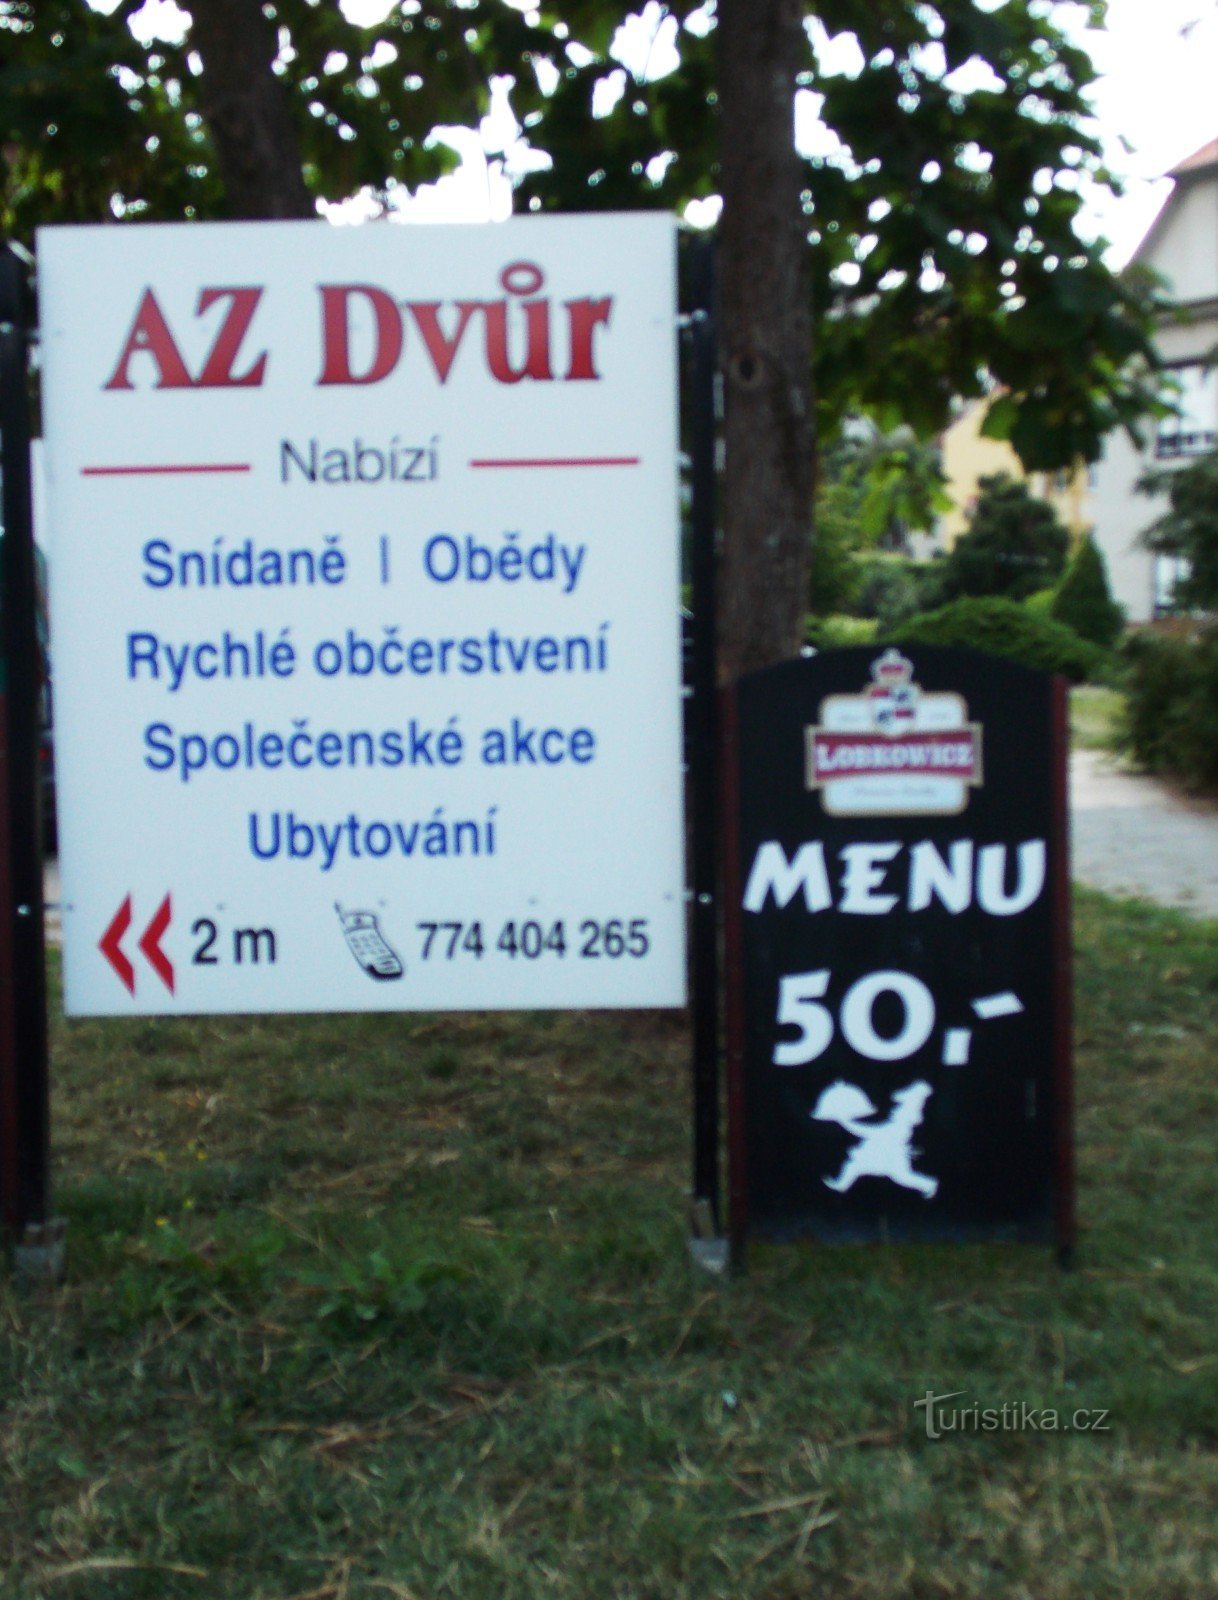 Nhà hàng AZ dvůr ở Luhačovice